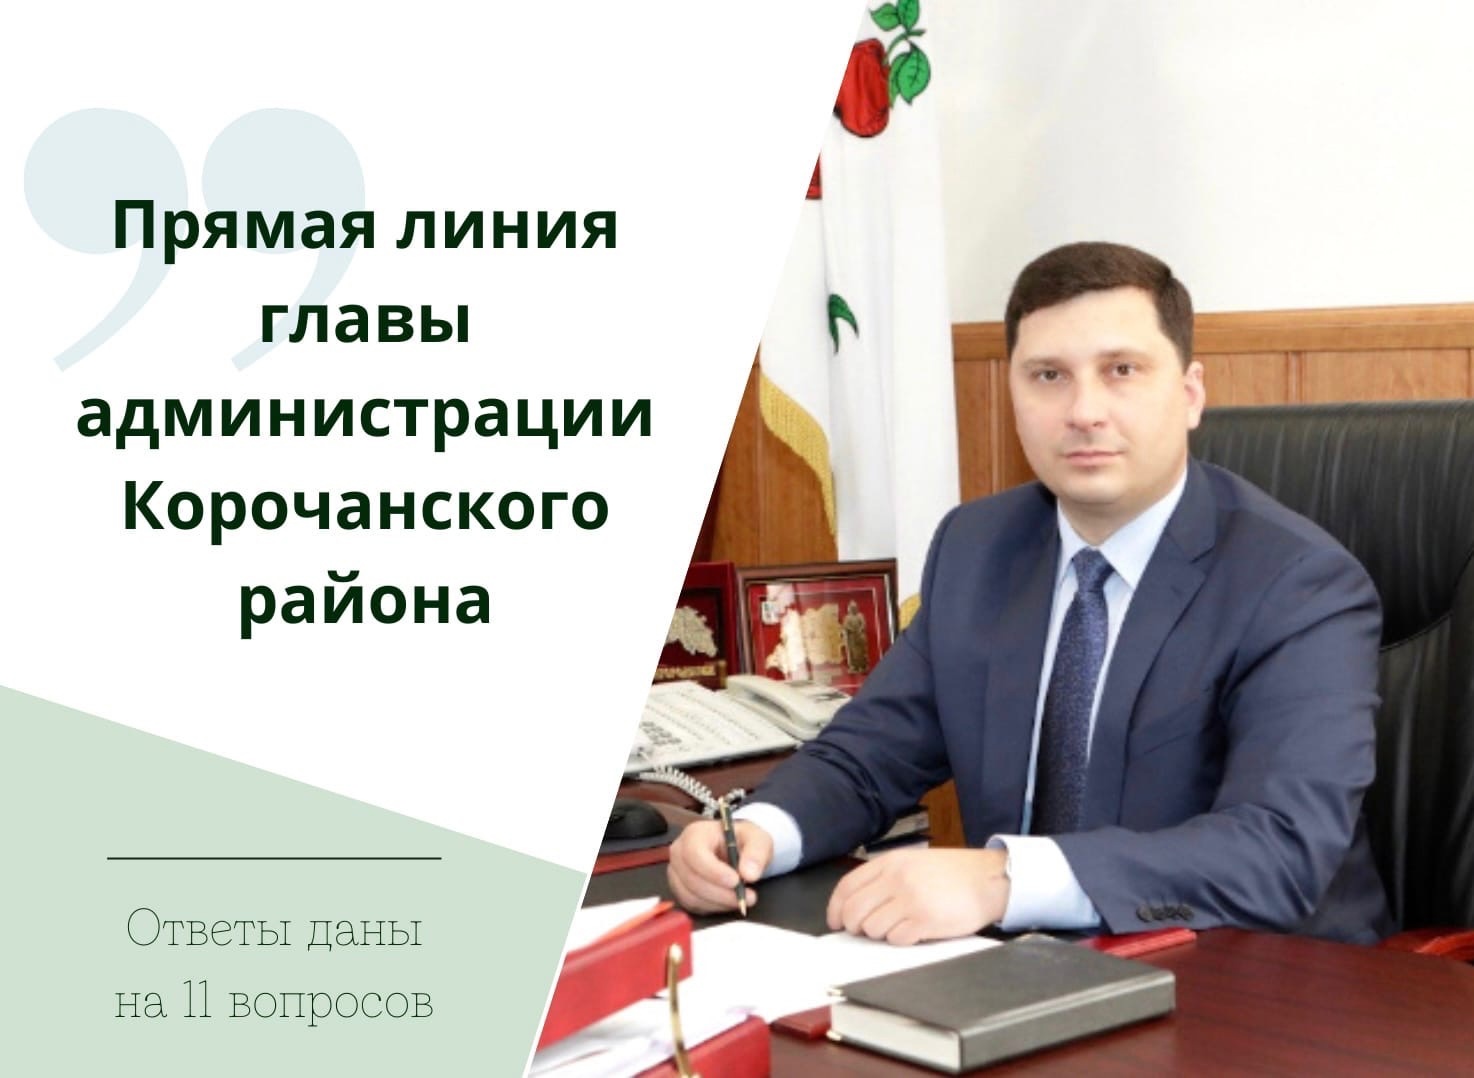 11 вопросов задали жители Корочанского района на прямую линию главы муниципалитета Николая Нестерова.